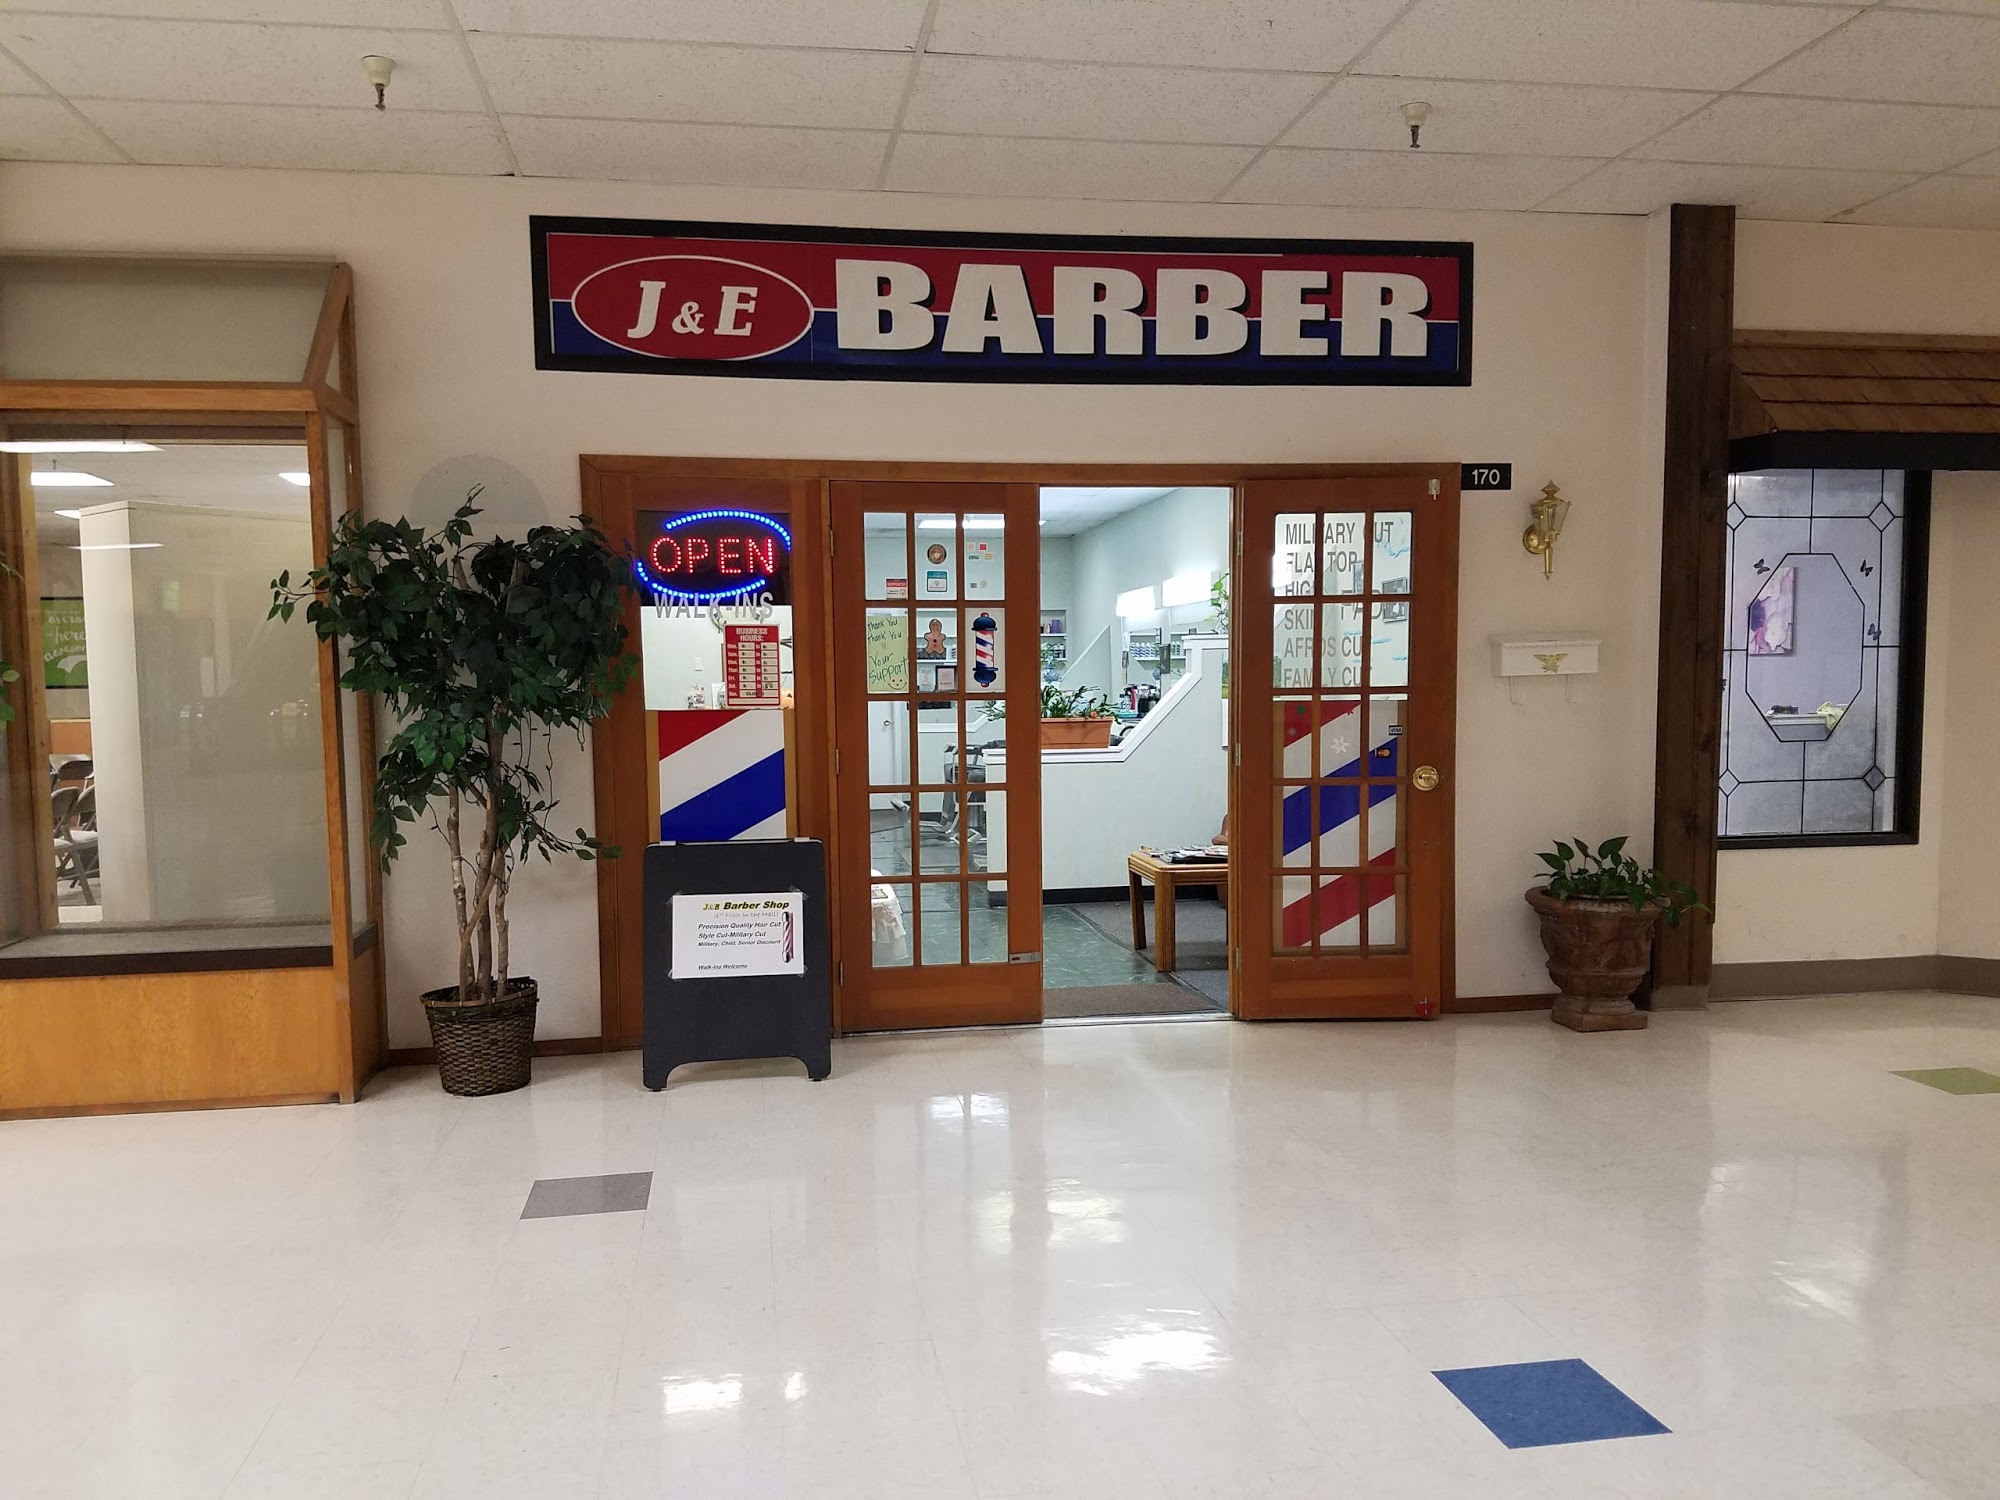 J & E Barbershop